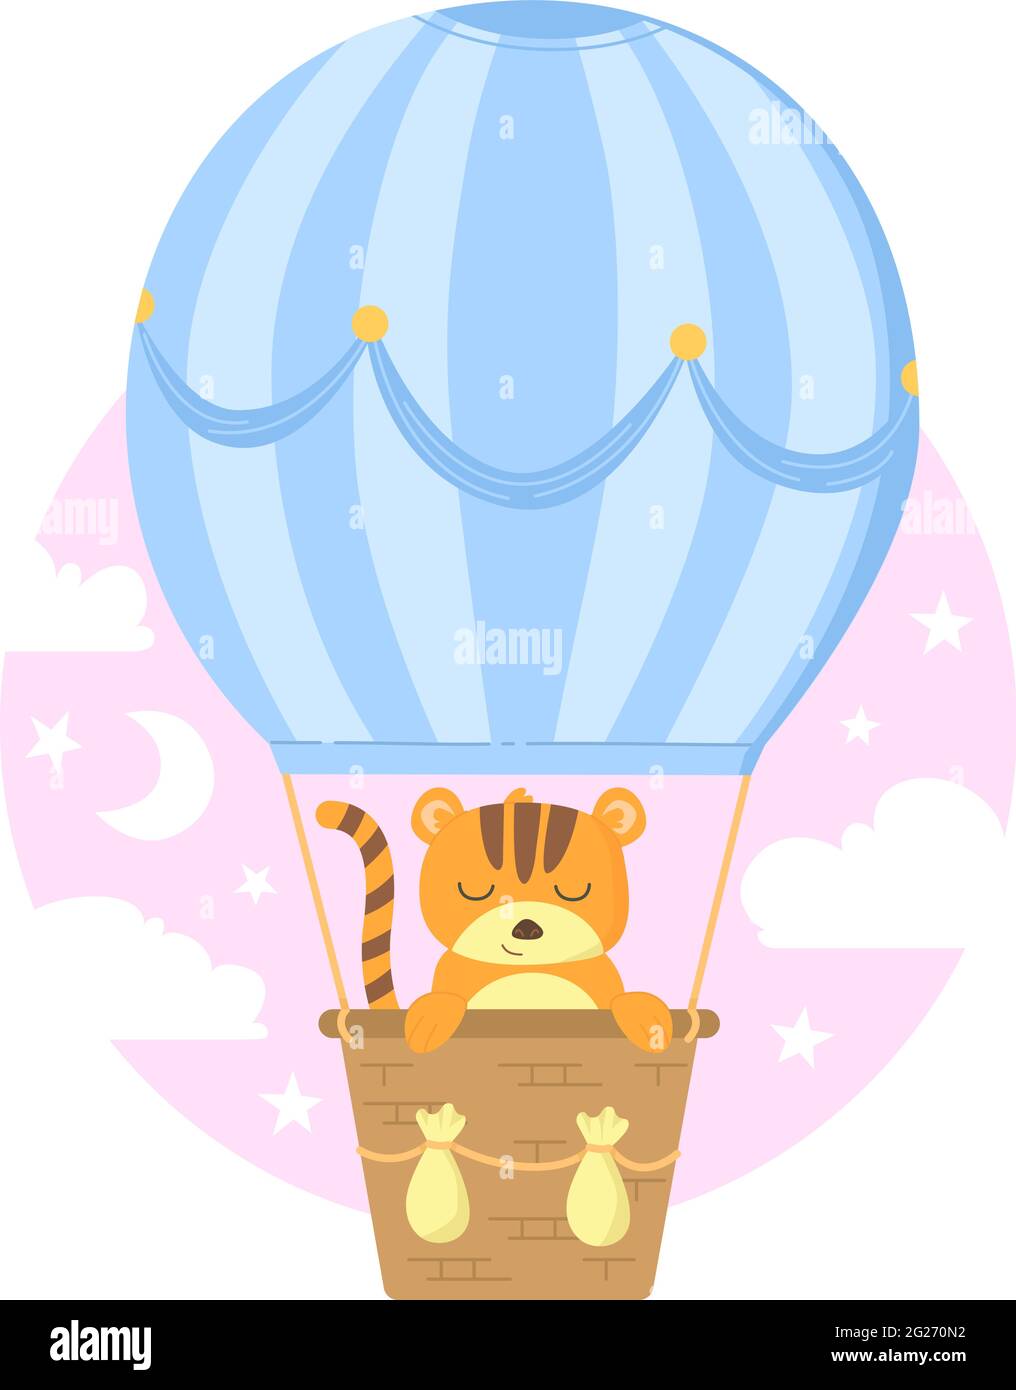 Carino tigre del bambino in cesto che flaging su palloncino blu tra il cielo rosa con le nuvole. Illustrazione vettoriale dello stock isolata su sfondo bianco in cartoni animati piatti Illustrazione Vettoriale